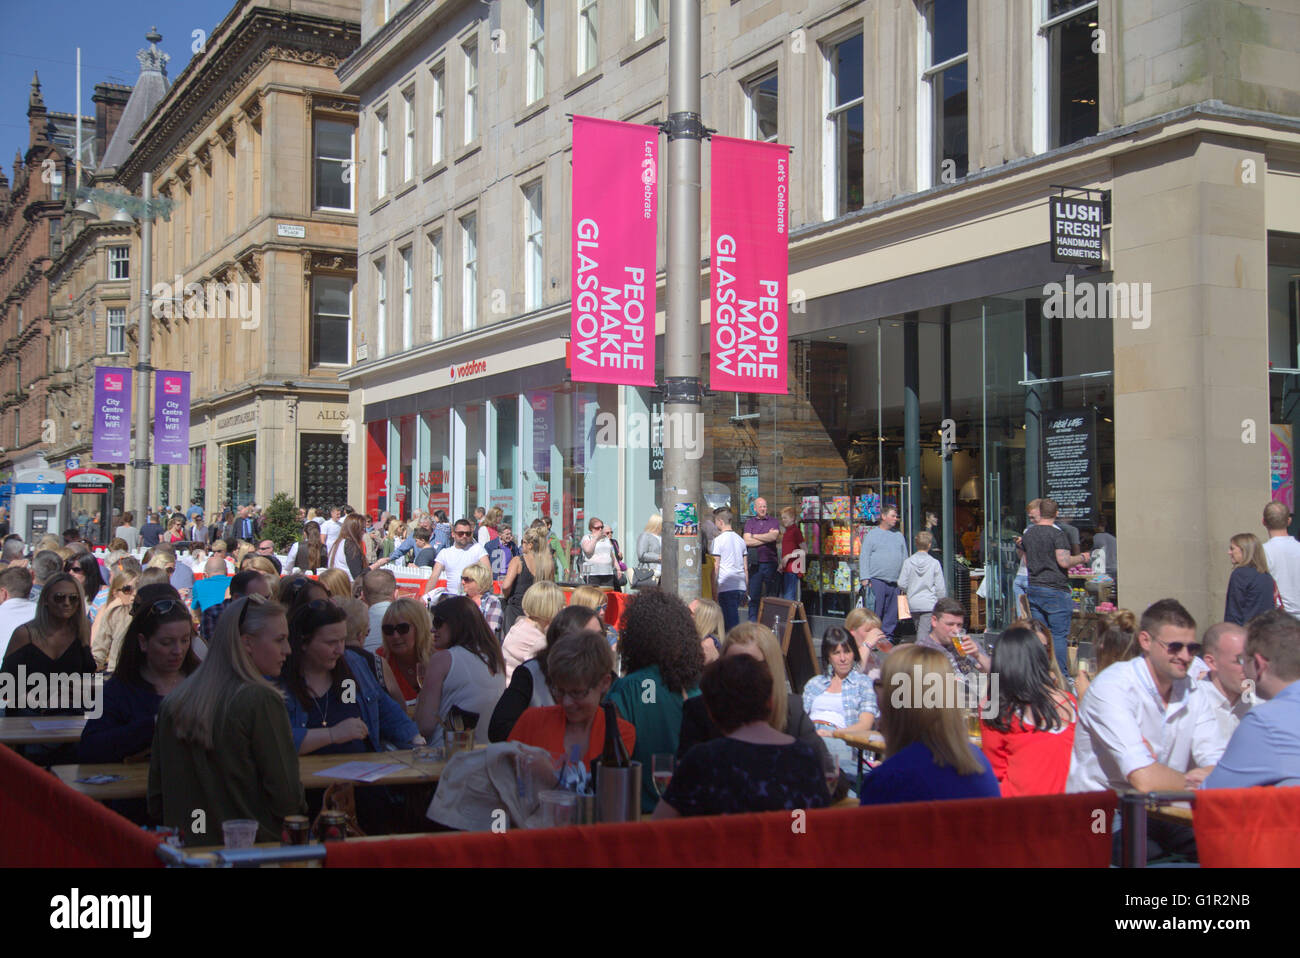 Glasgow Outdoor dining scene di strada in una giornata di sole, Buchanan Street, Glasgow, Scotland, Regno Unito Foto Stock